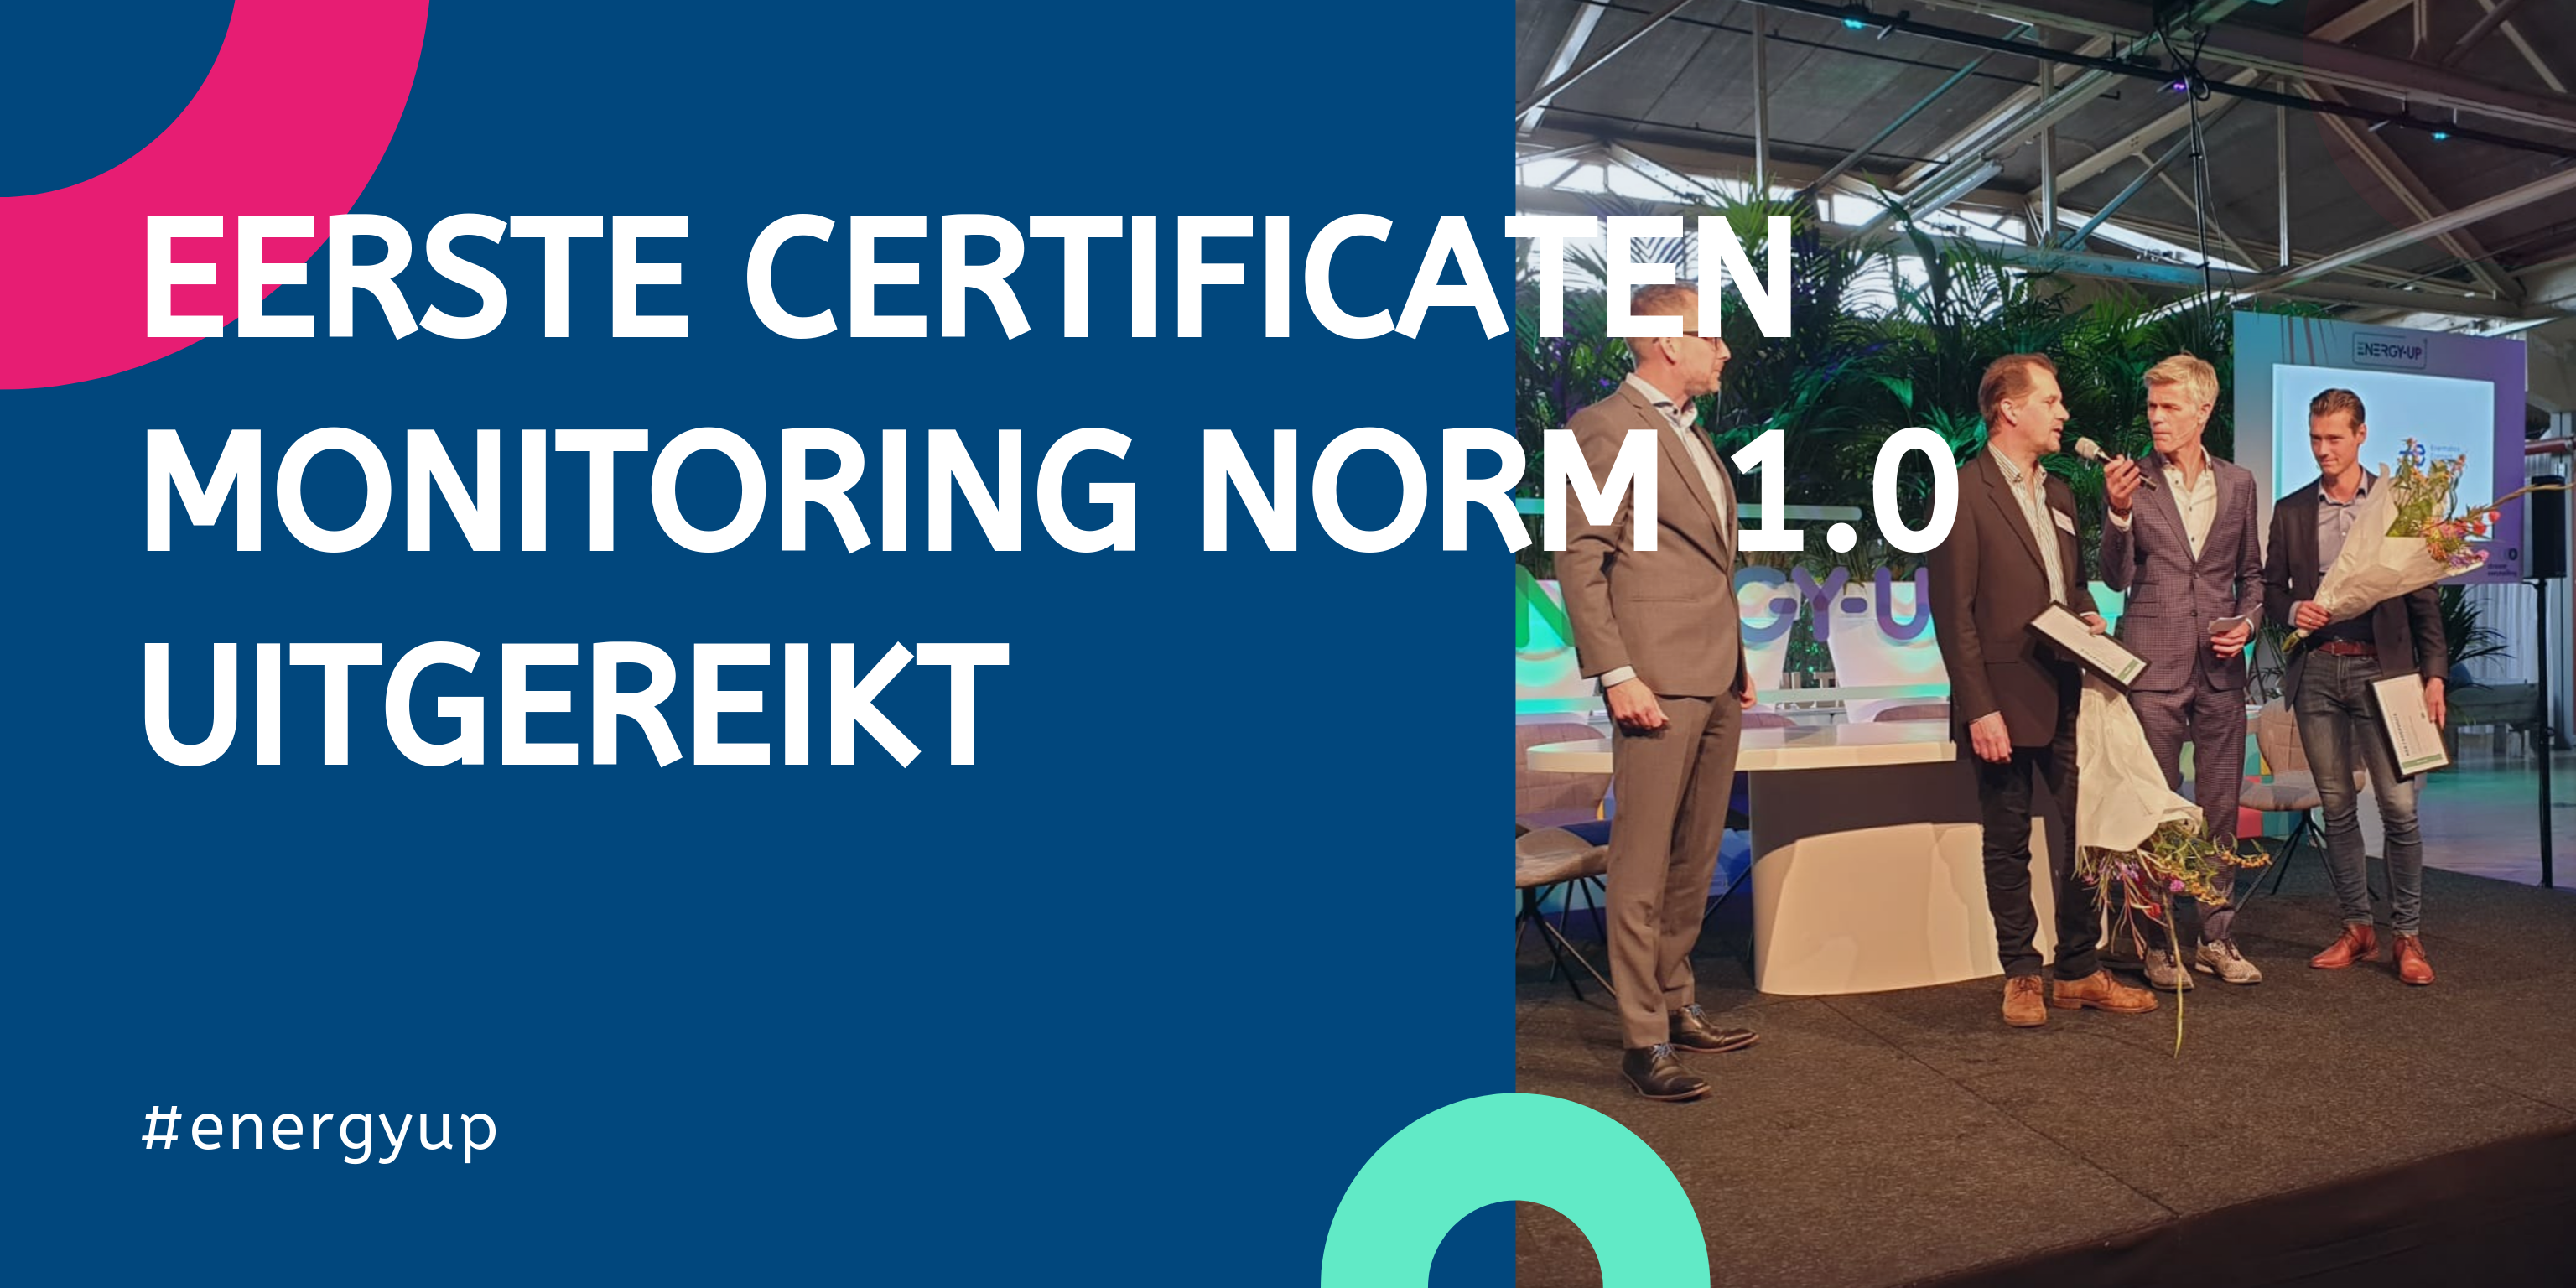 Eerste certificaten monitoring norm 1.0 uitgereikt